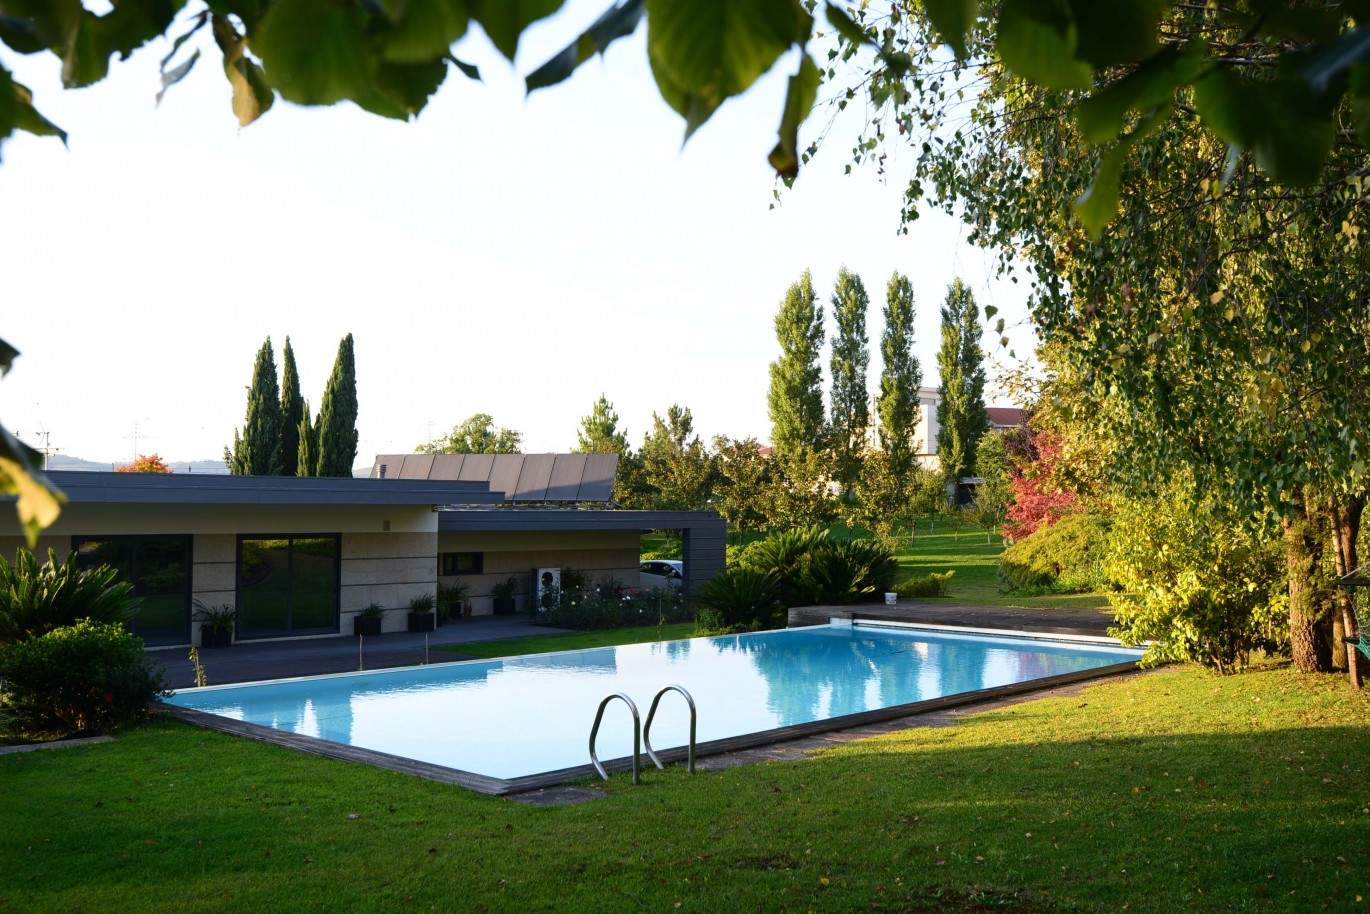 Moradia com piscina e jardim, para venda, em Valongo, Porto_209606